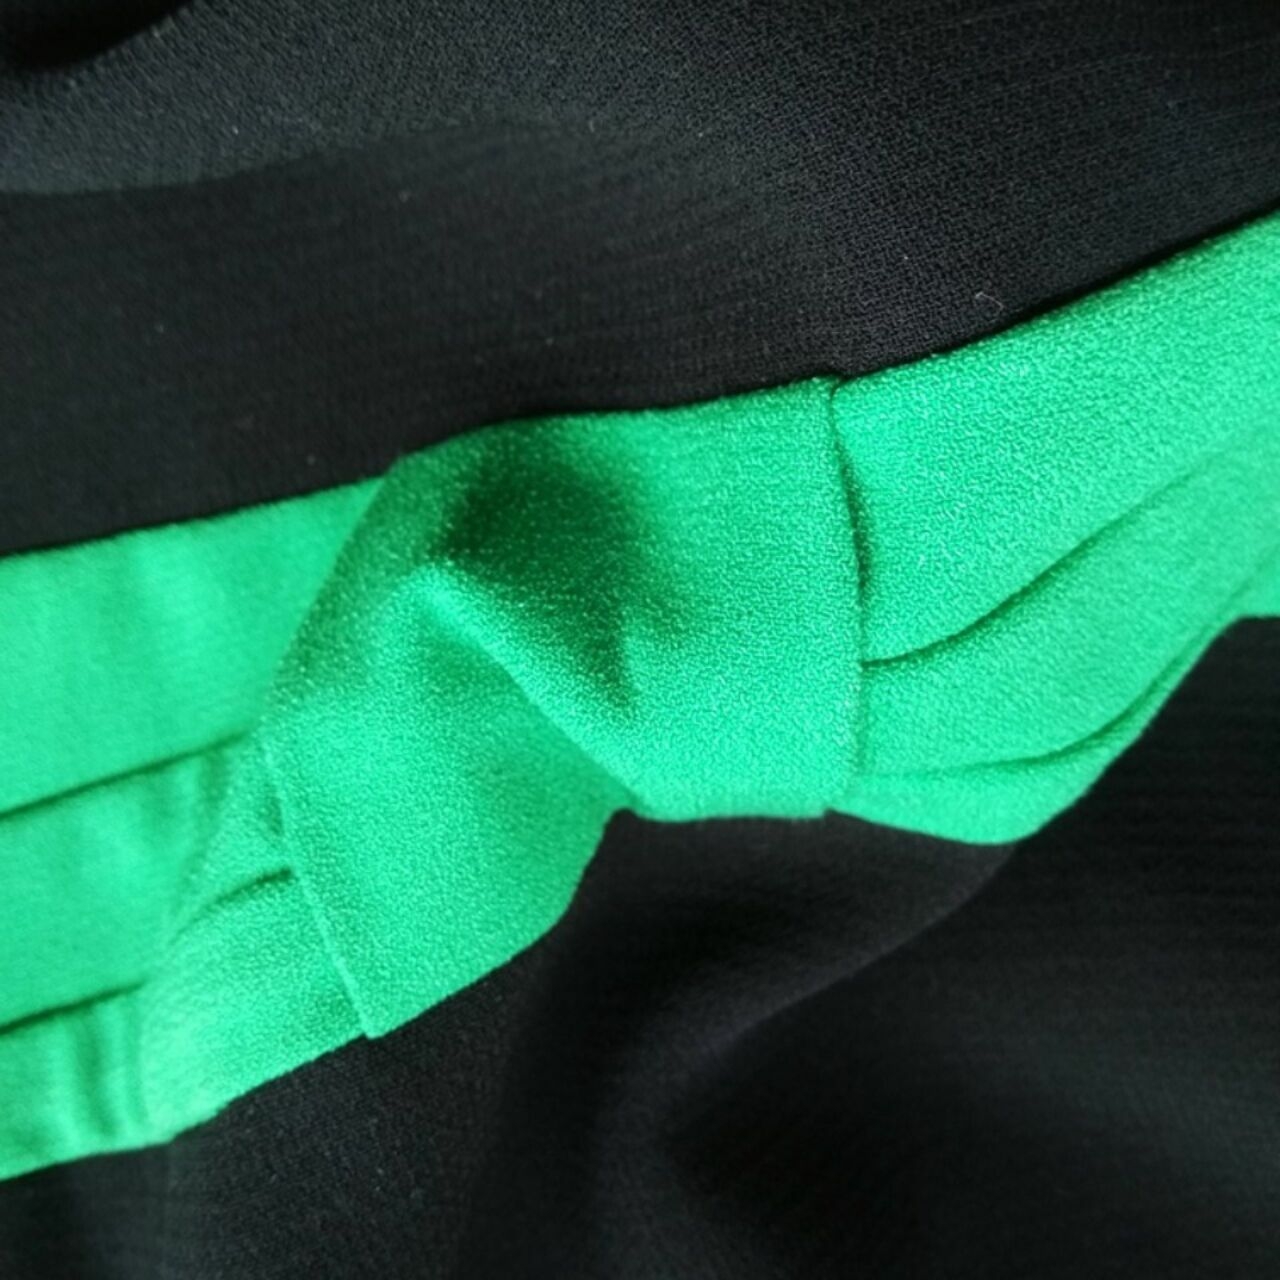 Tahari Black & Green Mini Dress